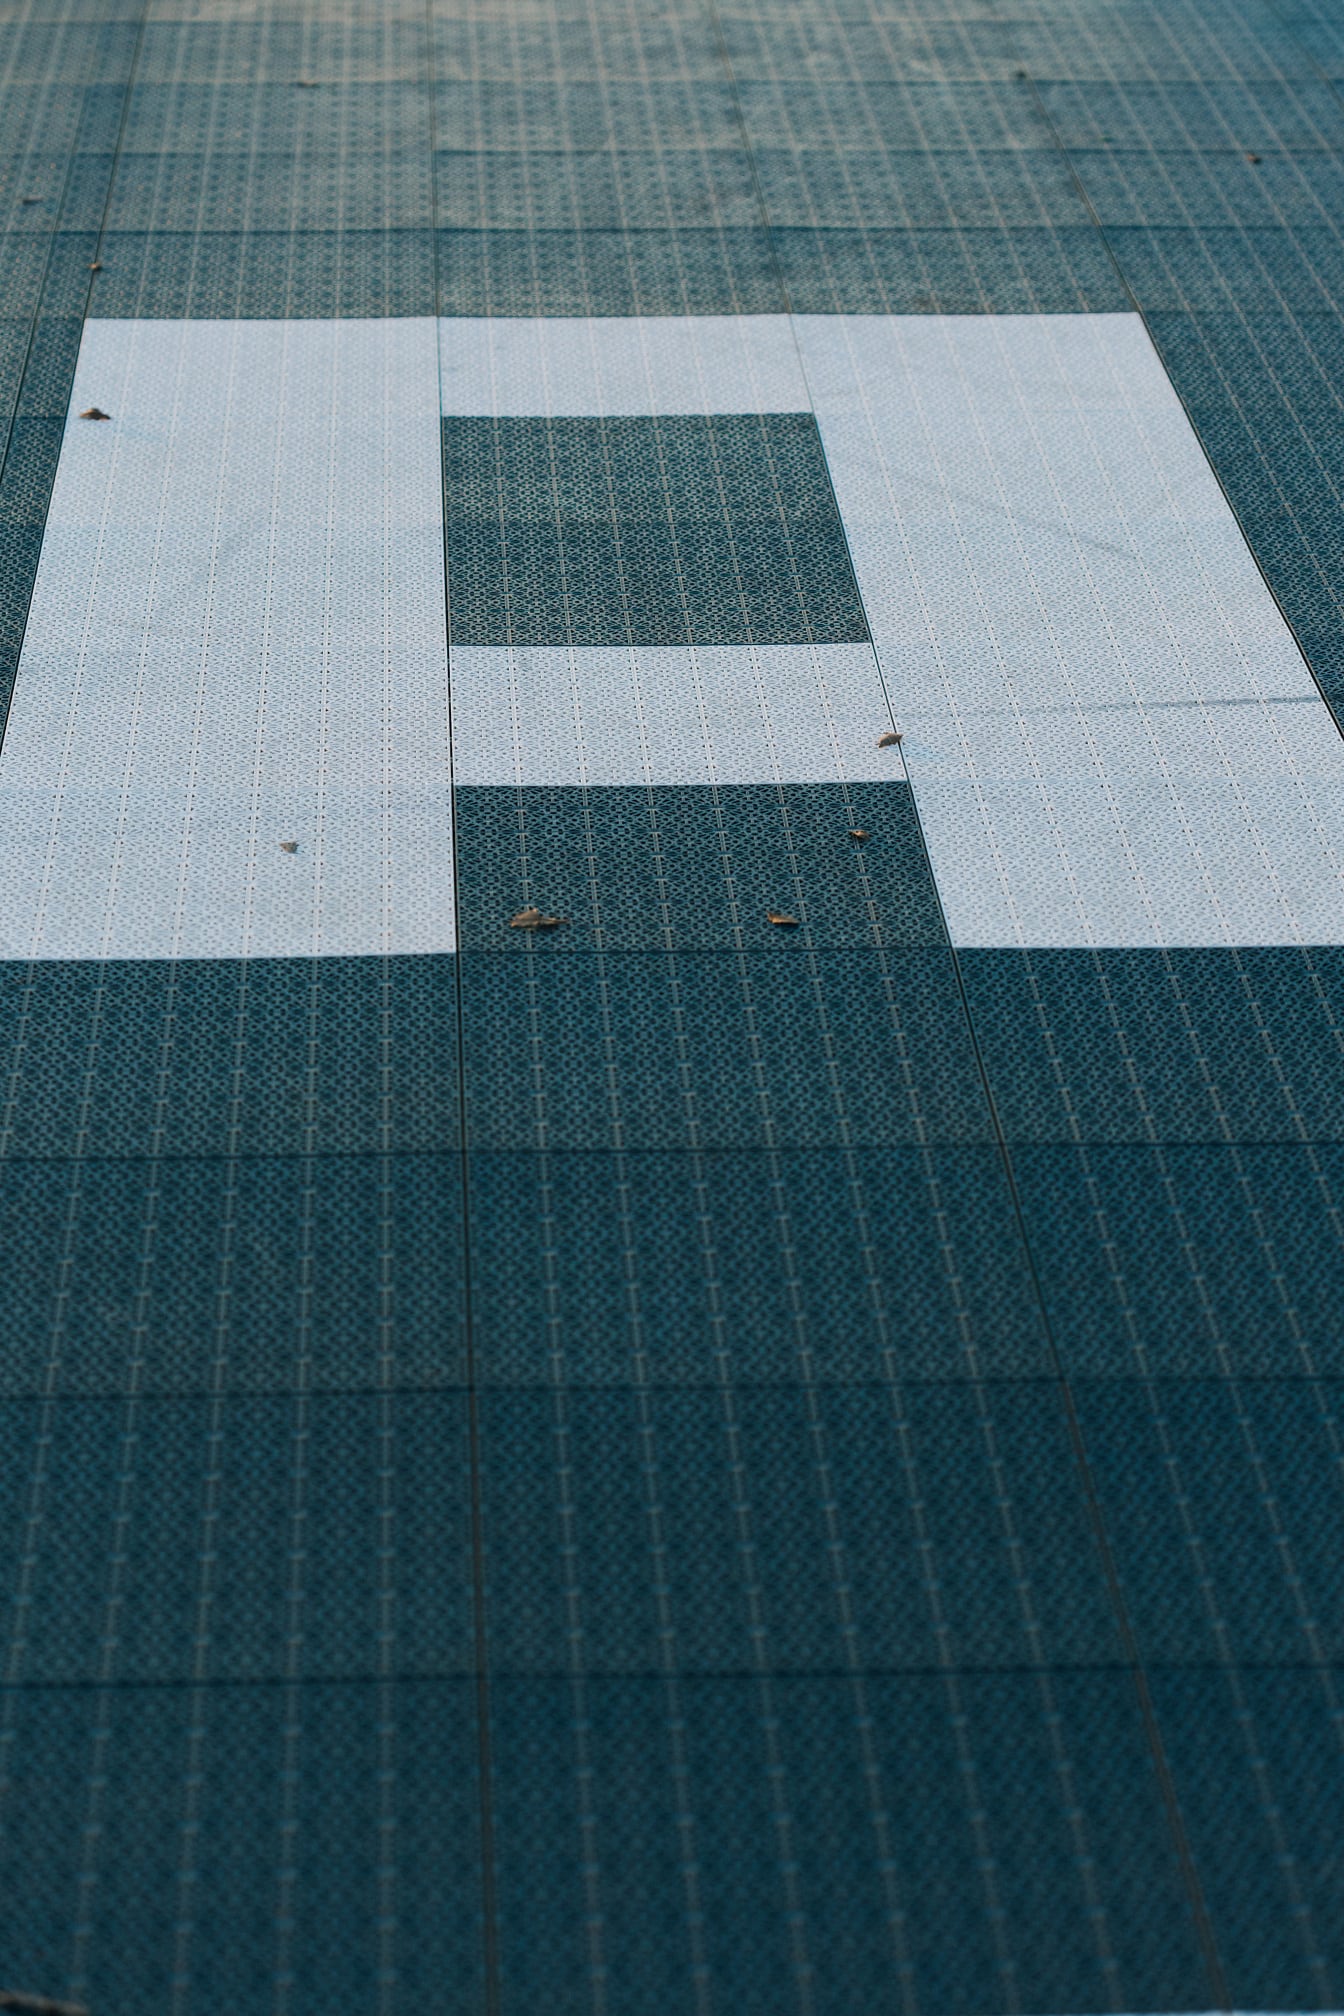 Nærbillede af et bogstav (A) på gulvet med geometrisk plastmønster